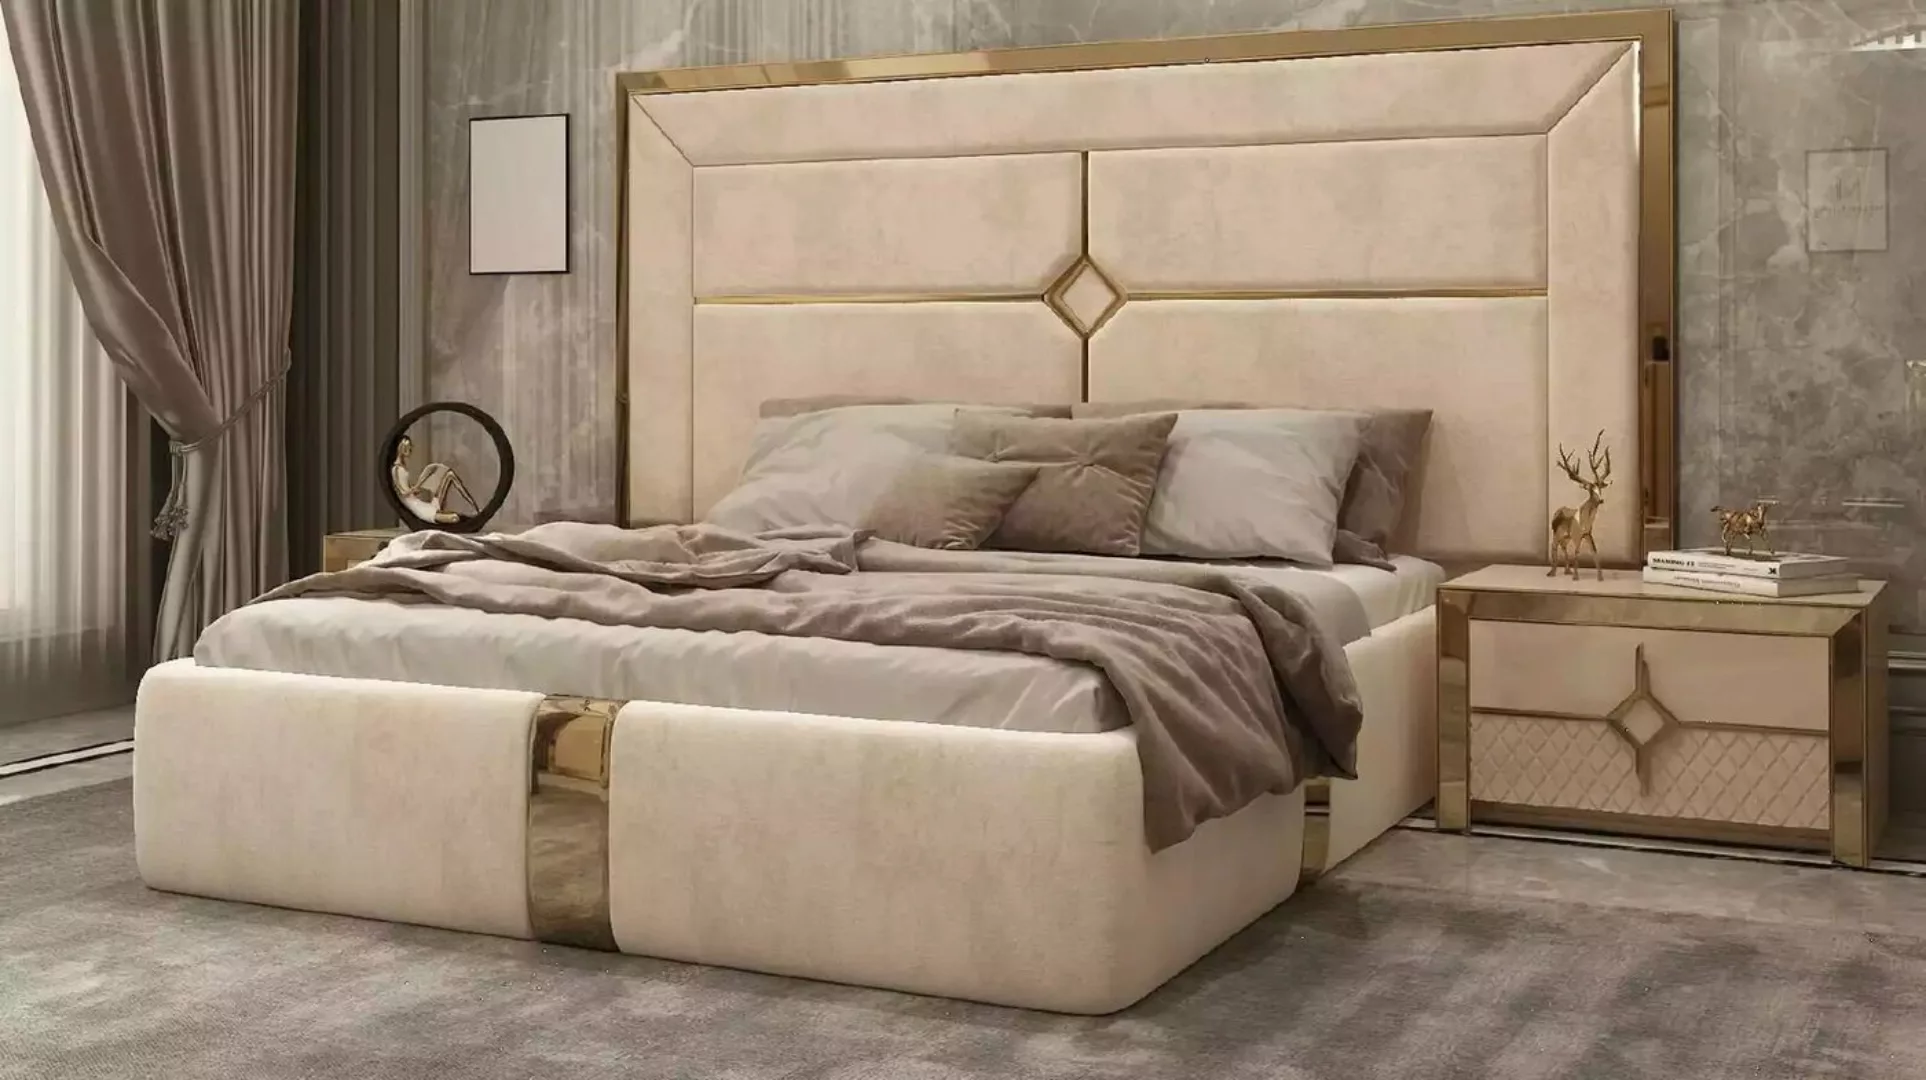 JVmoebel Bett Schlafzimmer Doppel Bett Luxus Einrichtung Beige Polster Mode günstig online kaufen